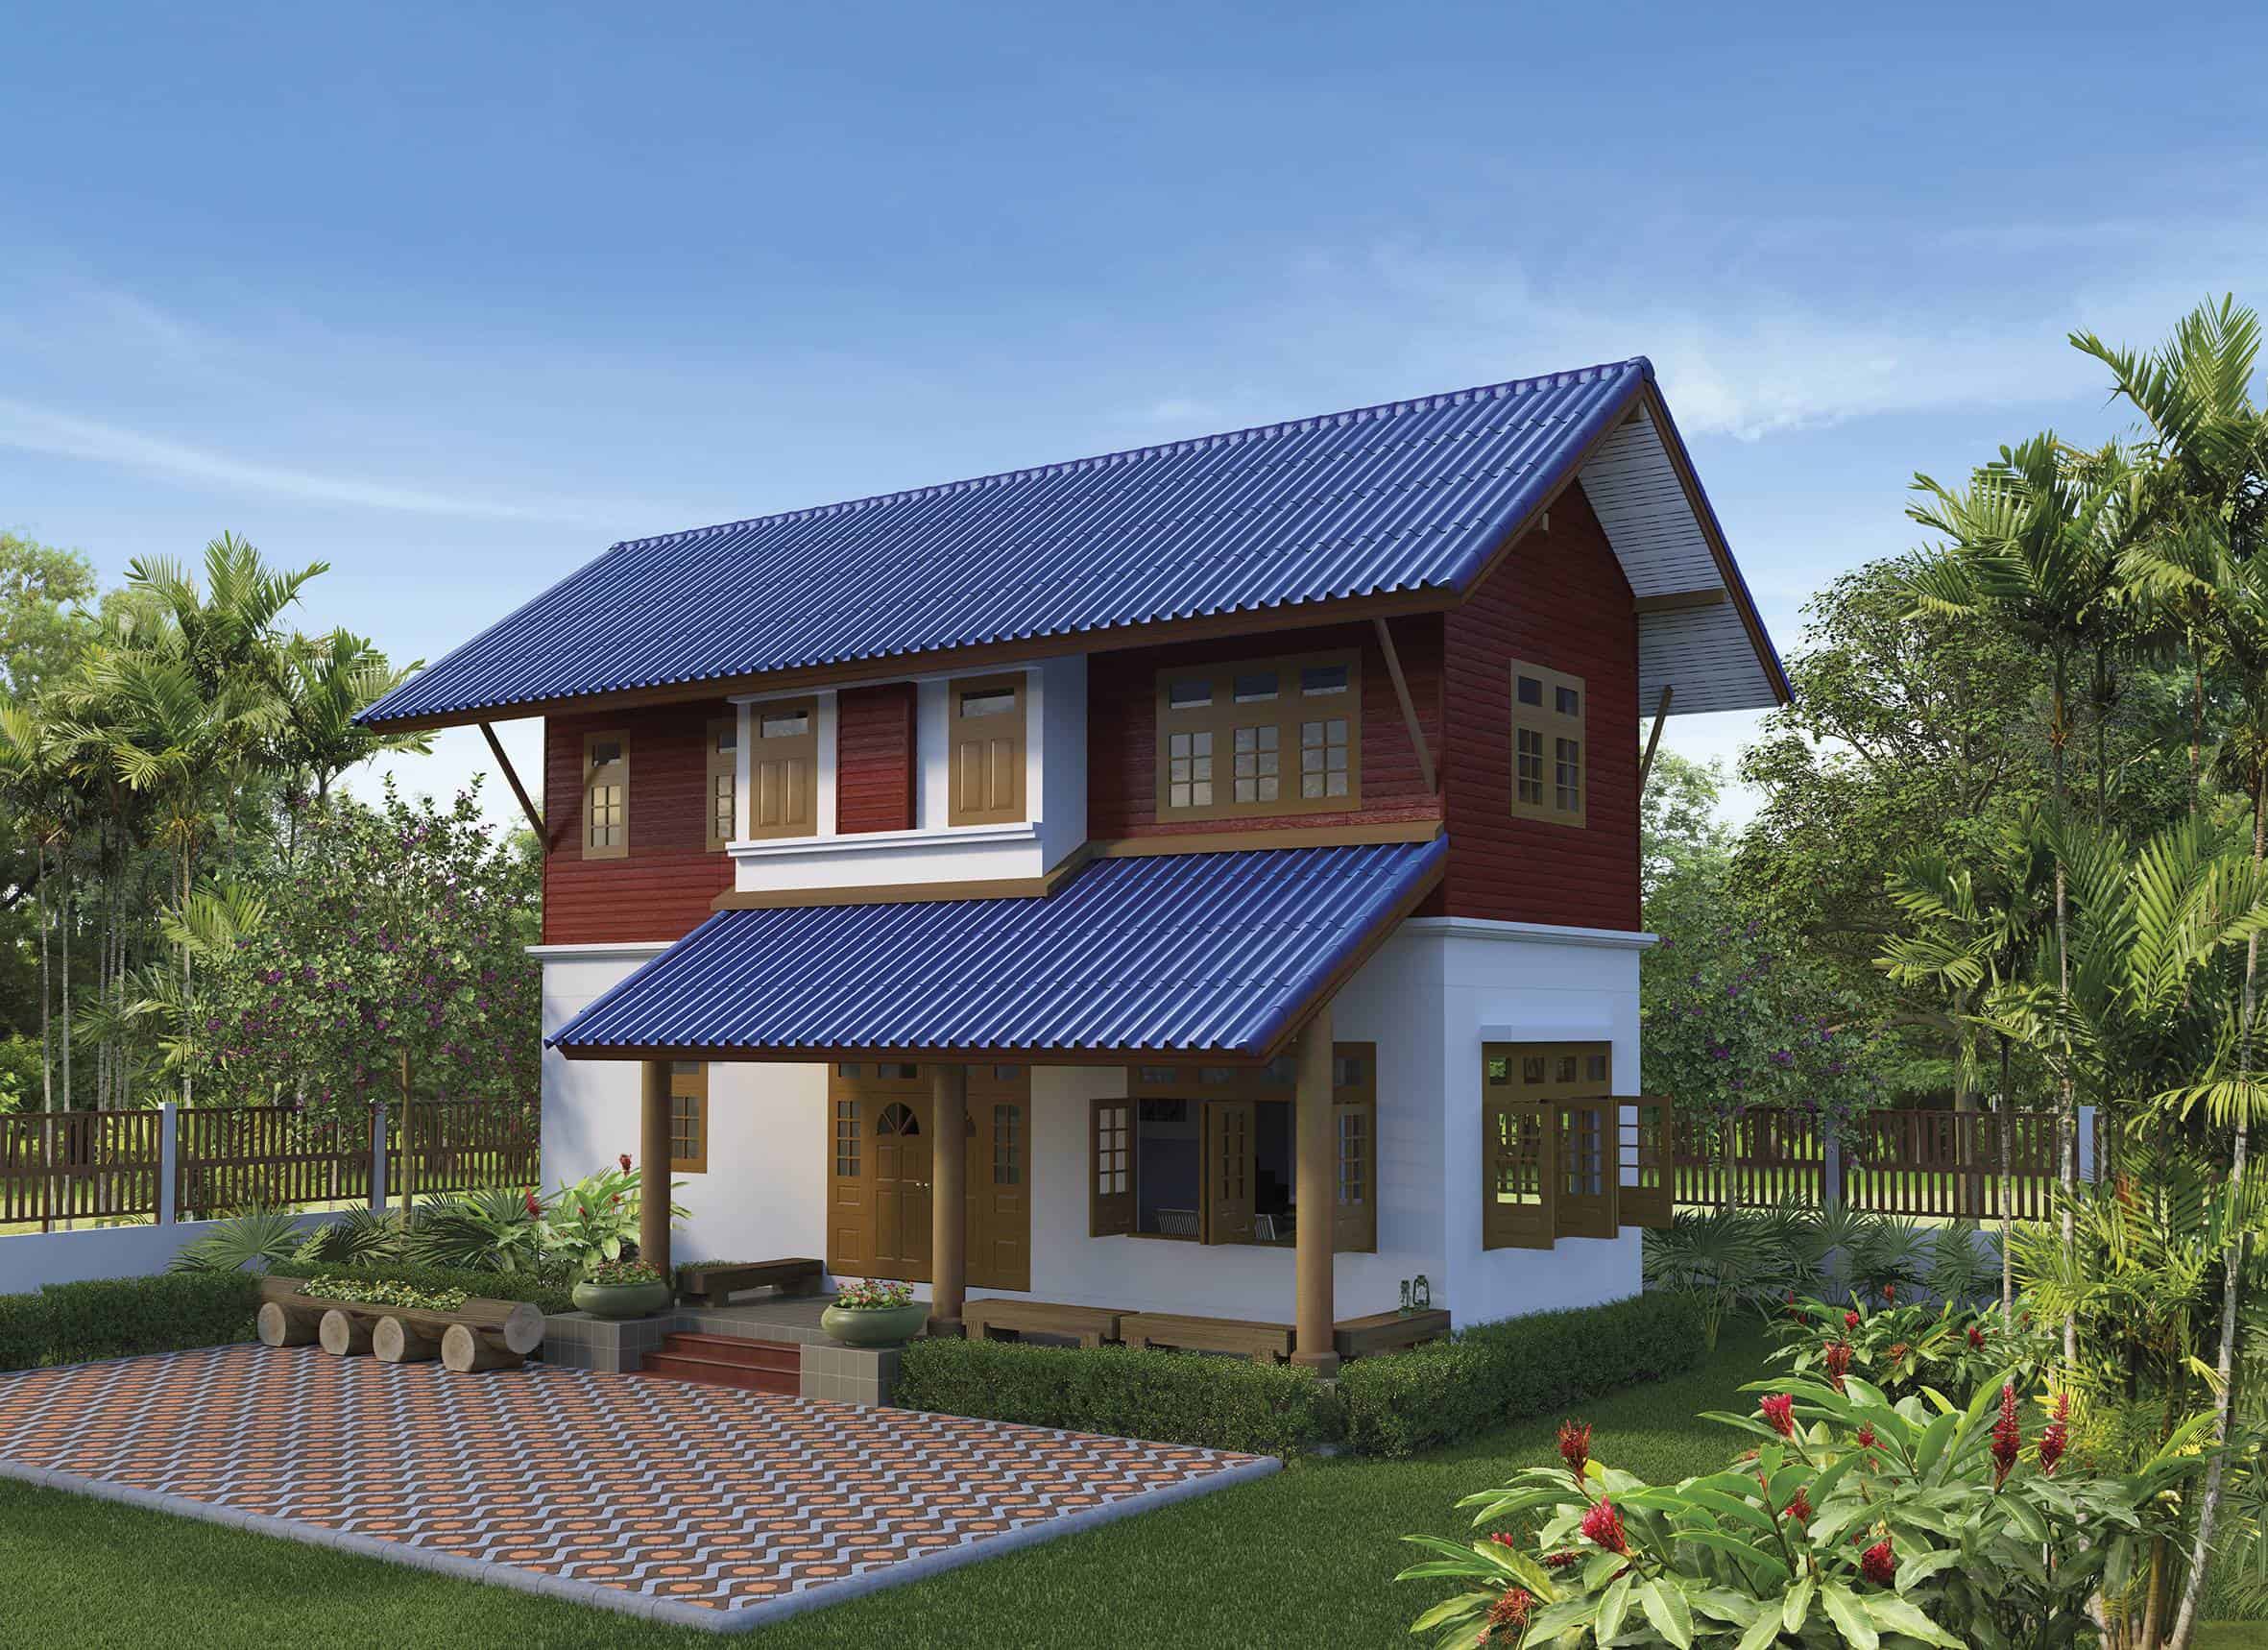 SCG Roman Tile - Fiber Cement Roof Blue resize 2